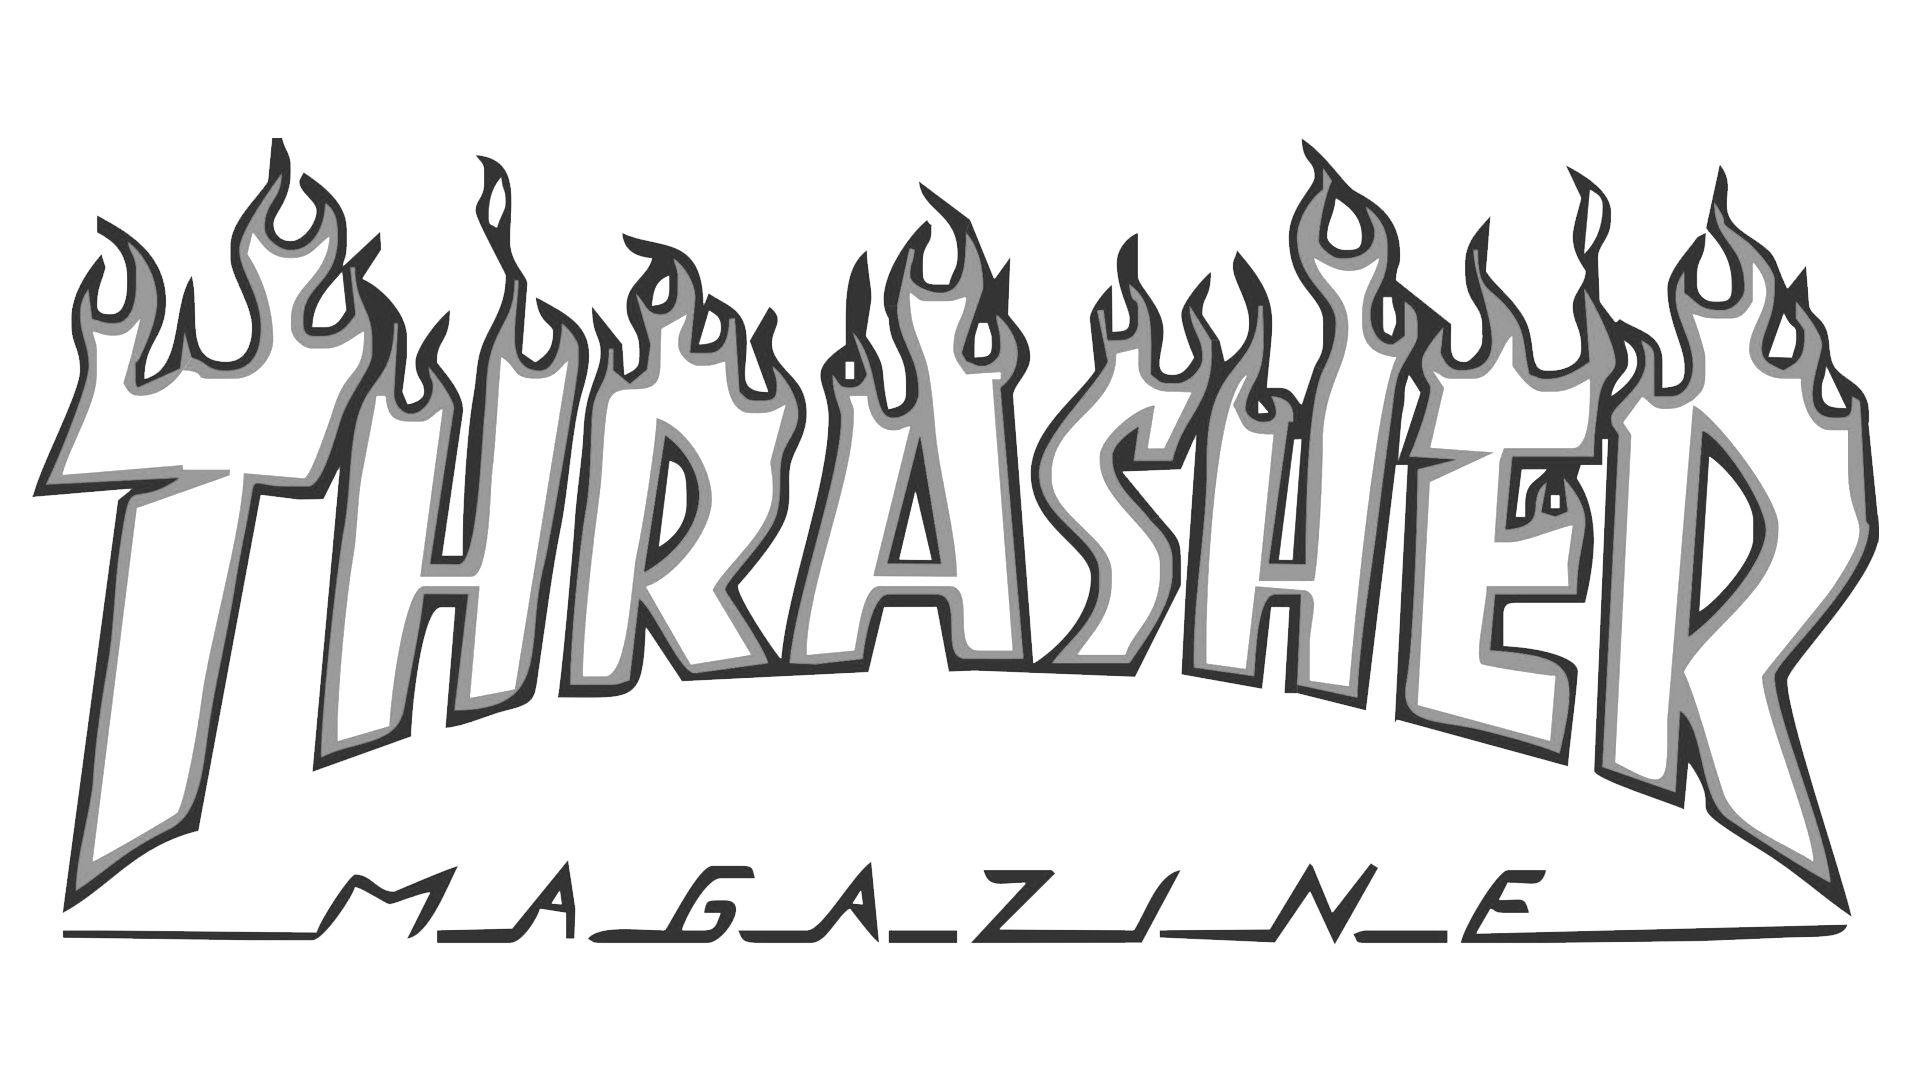 First Thrashers Logo - Thrasher Logo, Thrasher Symbol, Meaning, History and Evolution